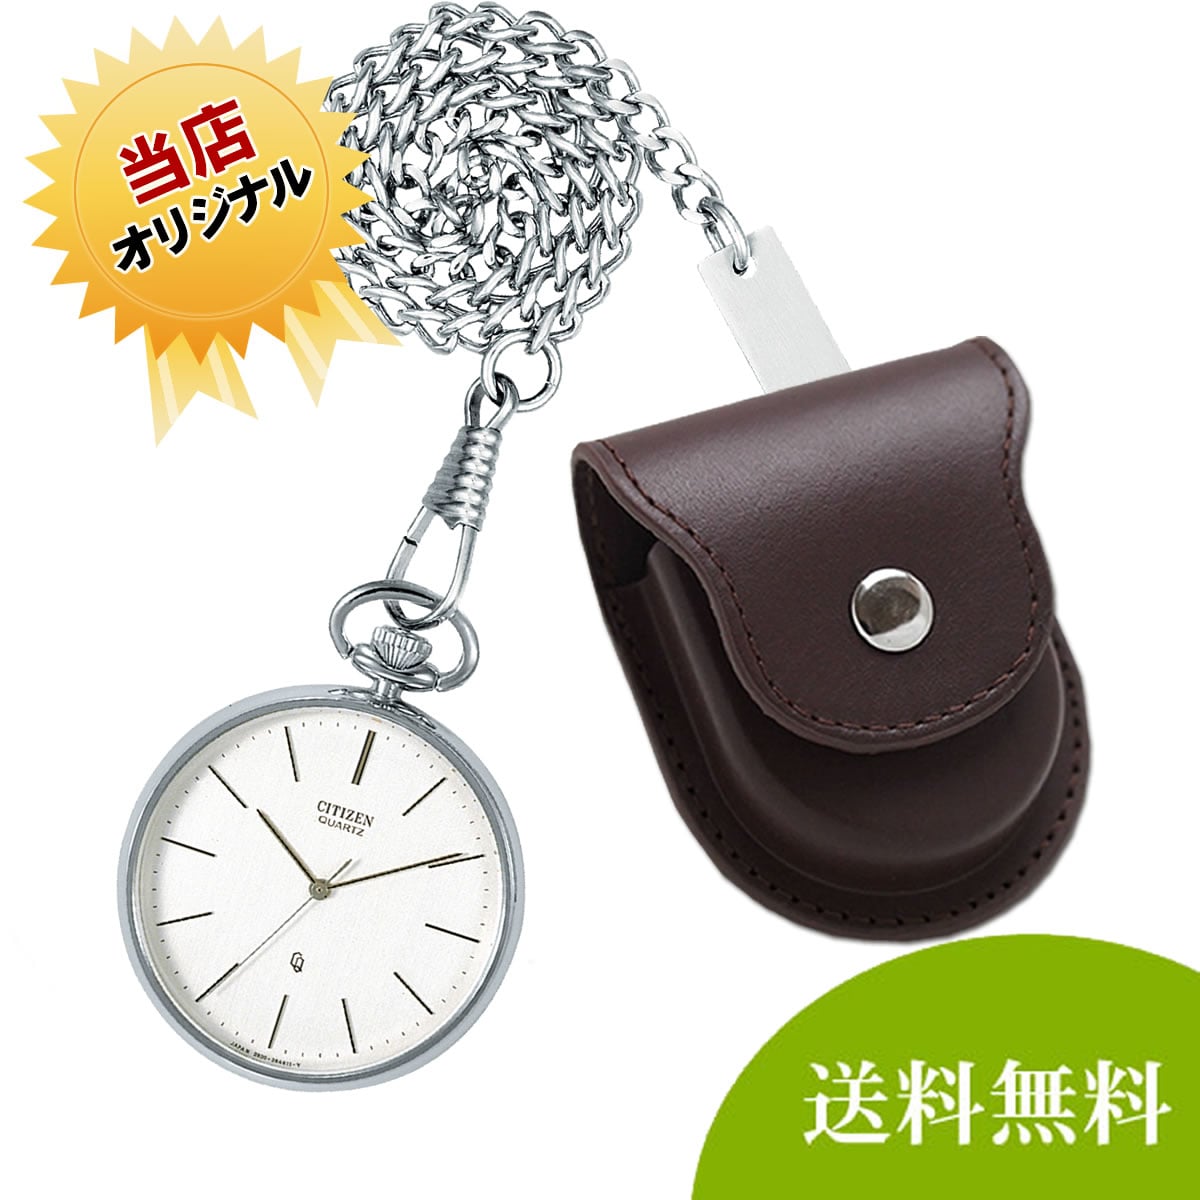 シチズン(CITIZEN) クォーツ式懐中時計と正美堂オリジナル革ケース ...